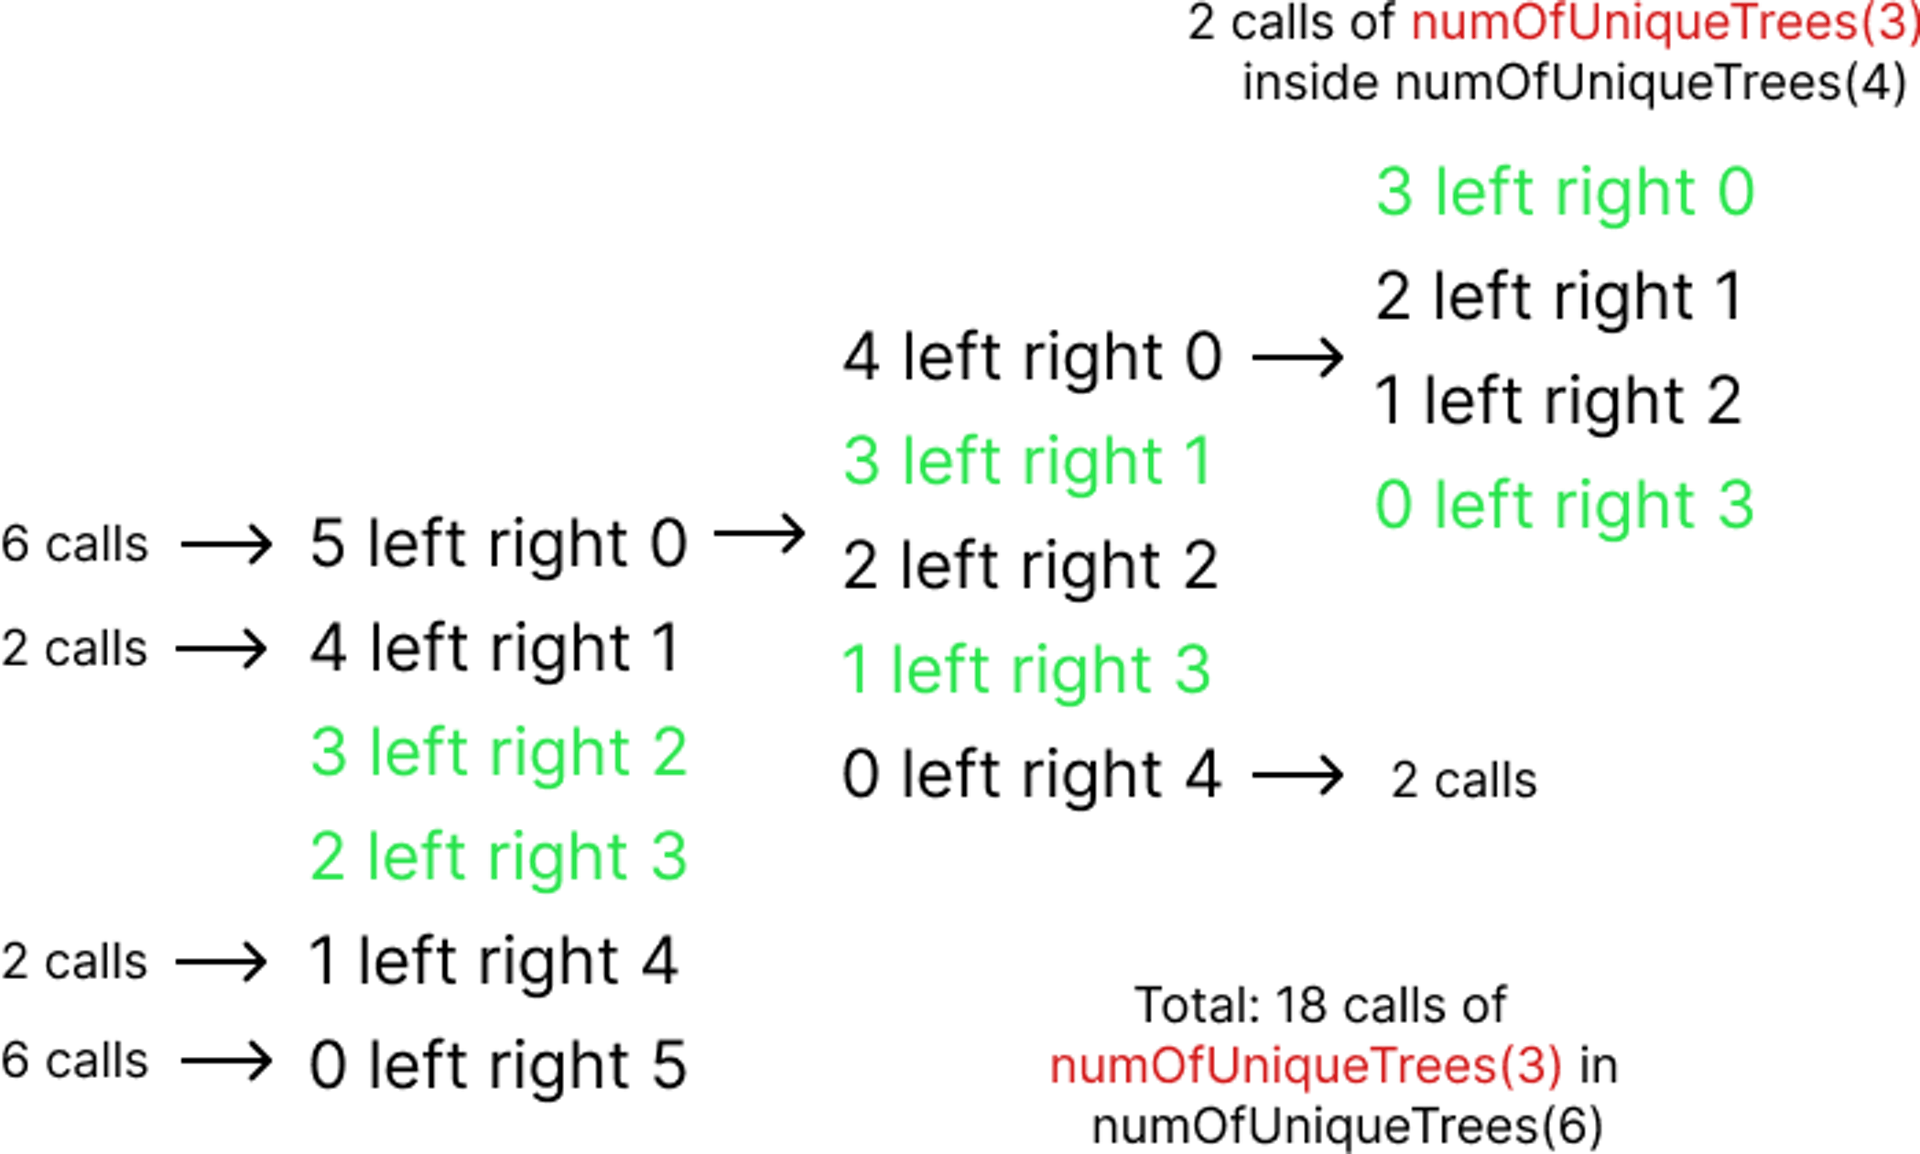 Chamadas de numOfUniqueTrees(3) em todas as distribuições onde N = 6